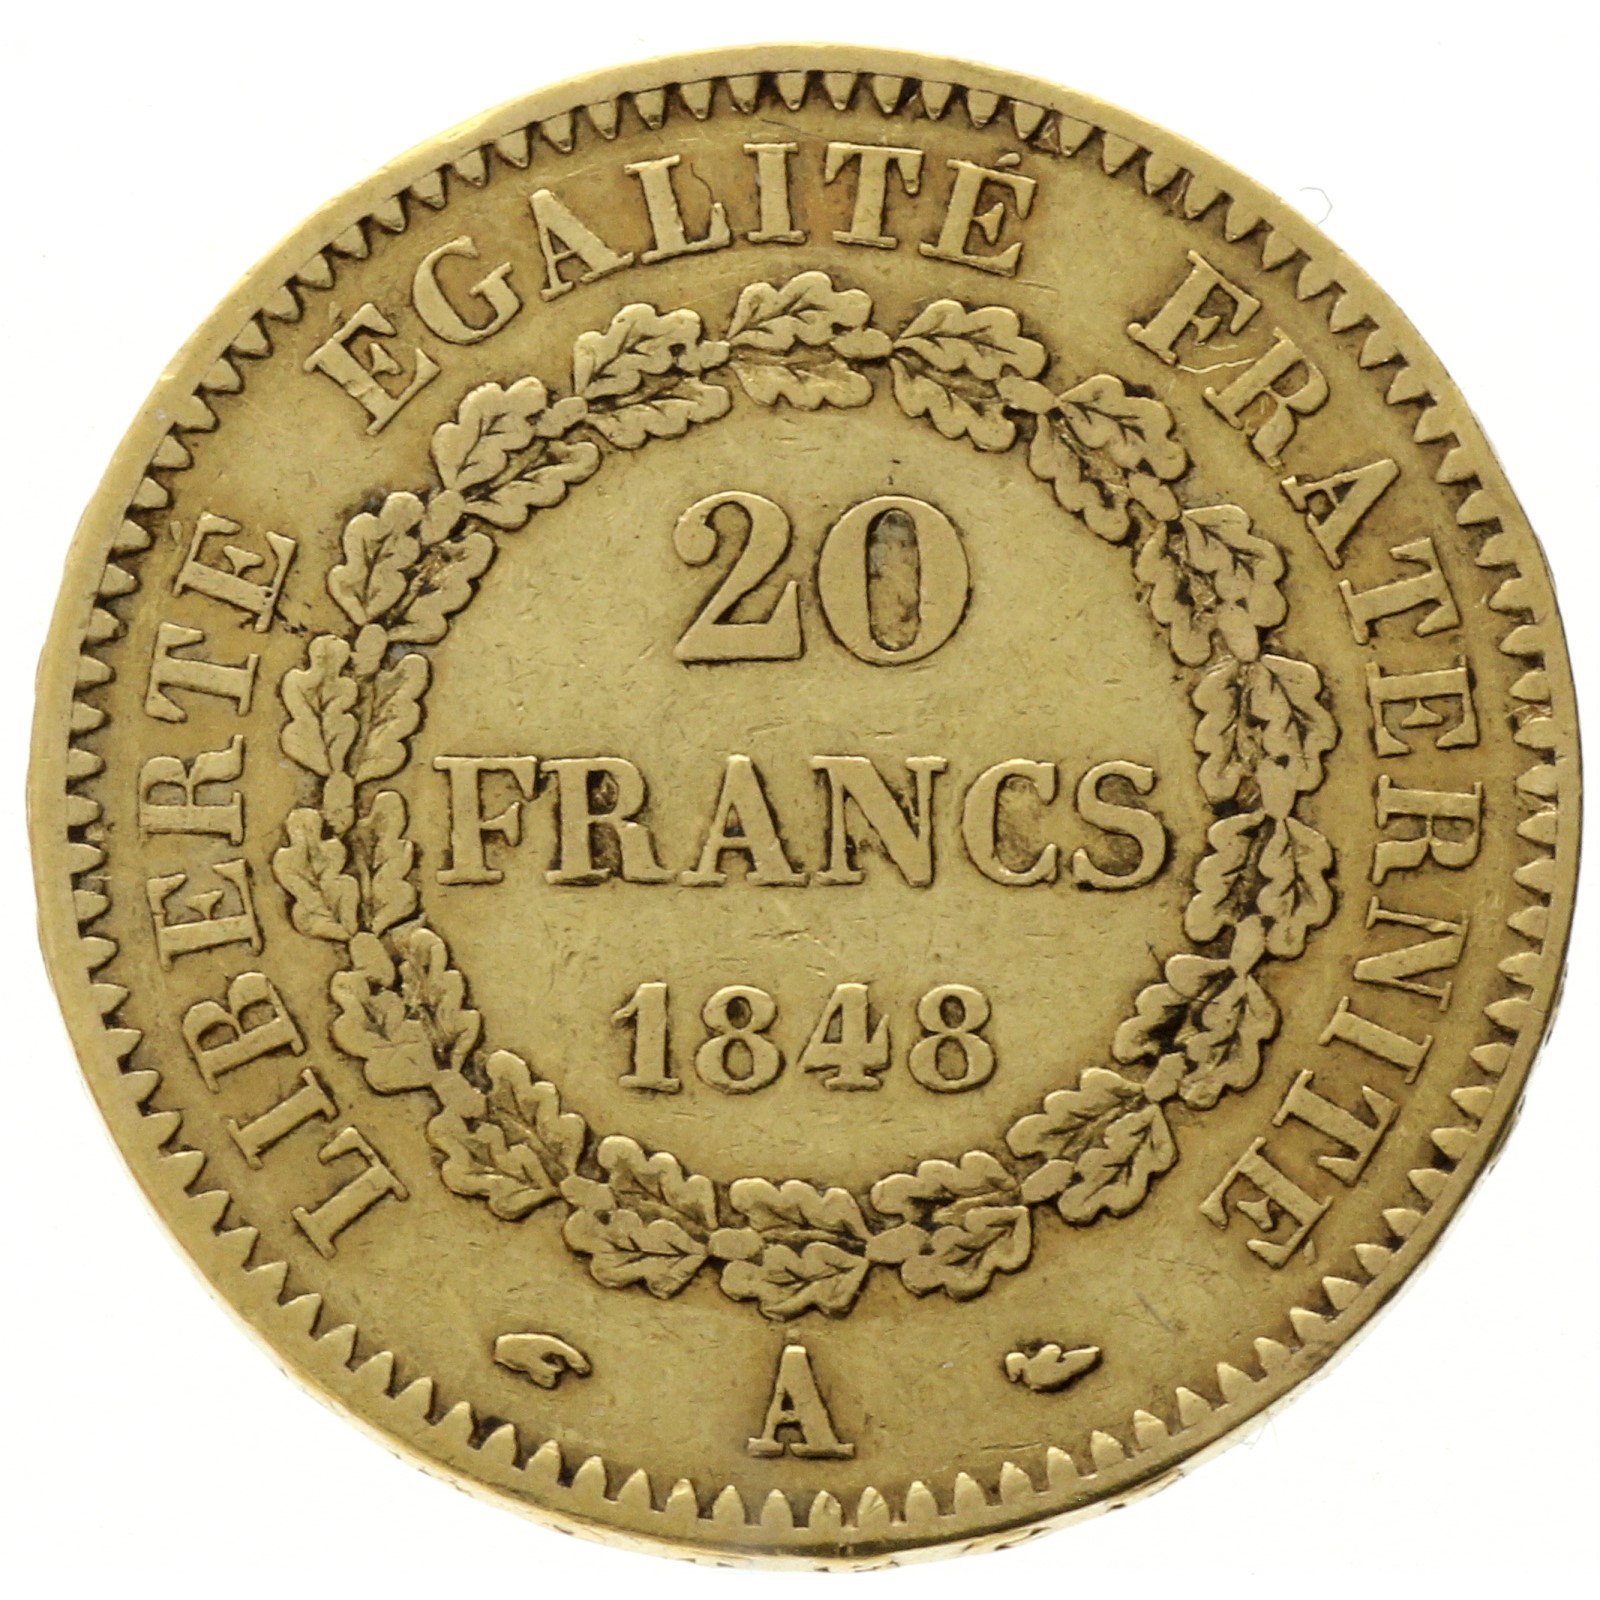 France - 20 francs - 1848 - A